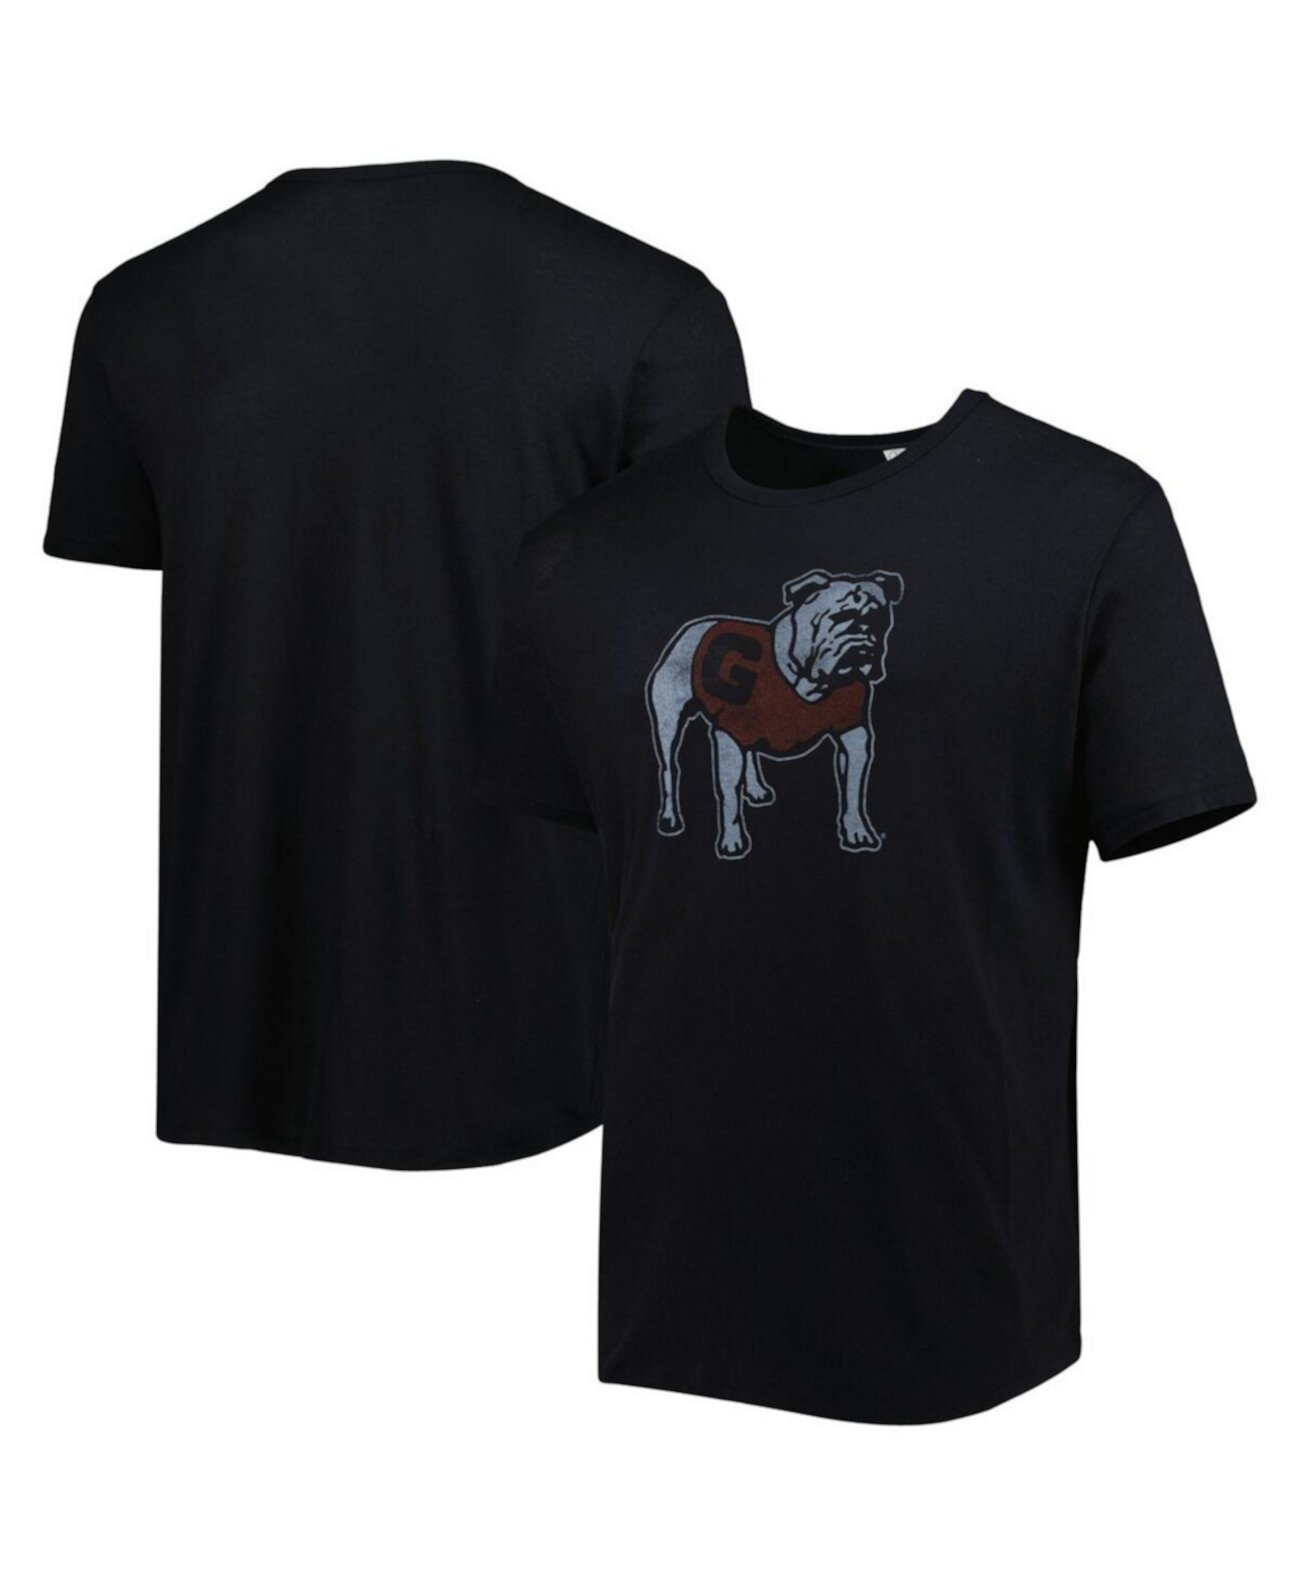 Мужская черная футболка с логотипом Georgia Bulldogs в винтажном стиле Alternative